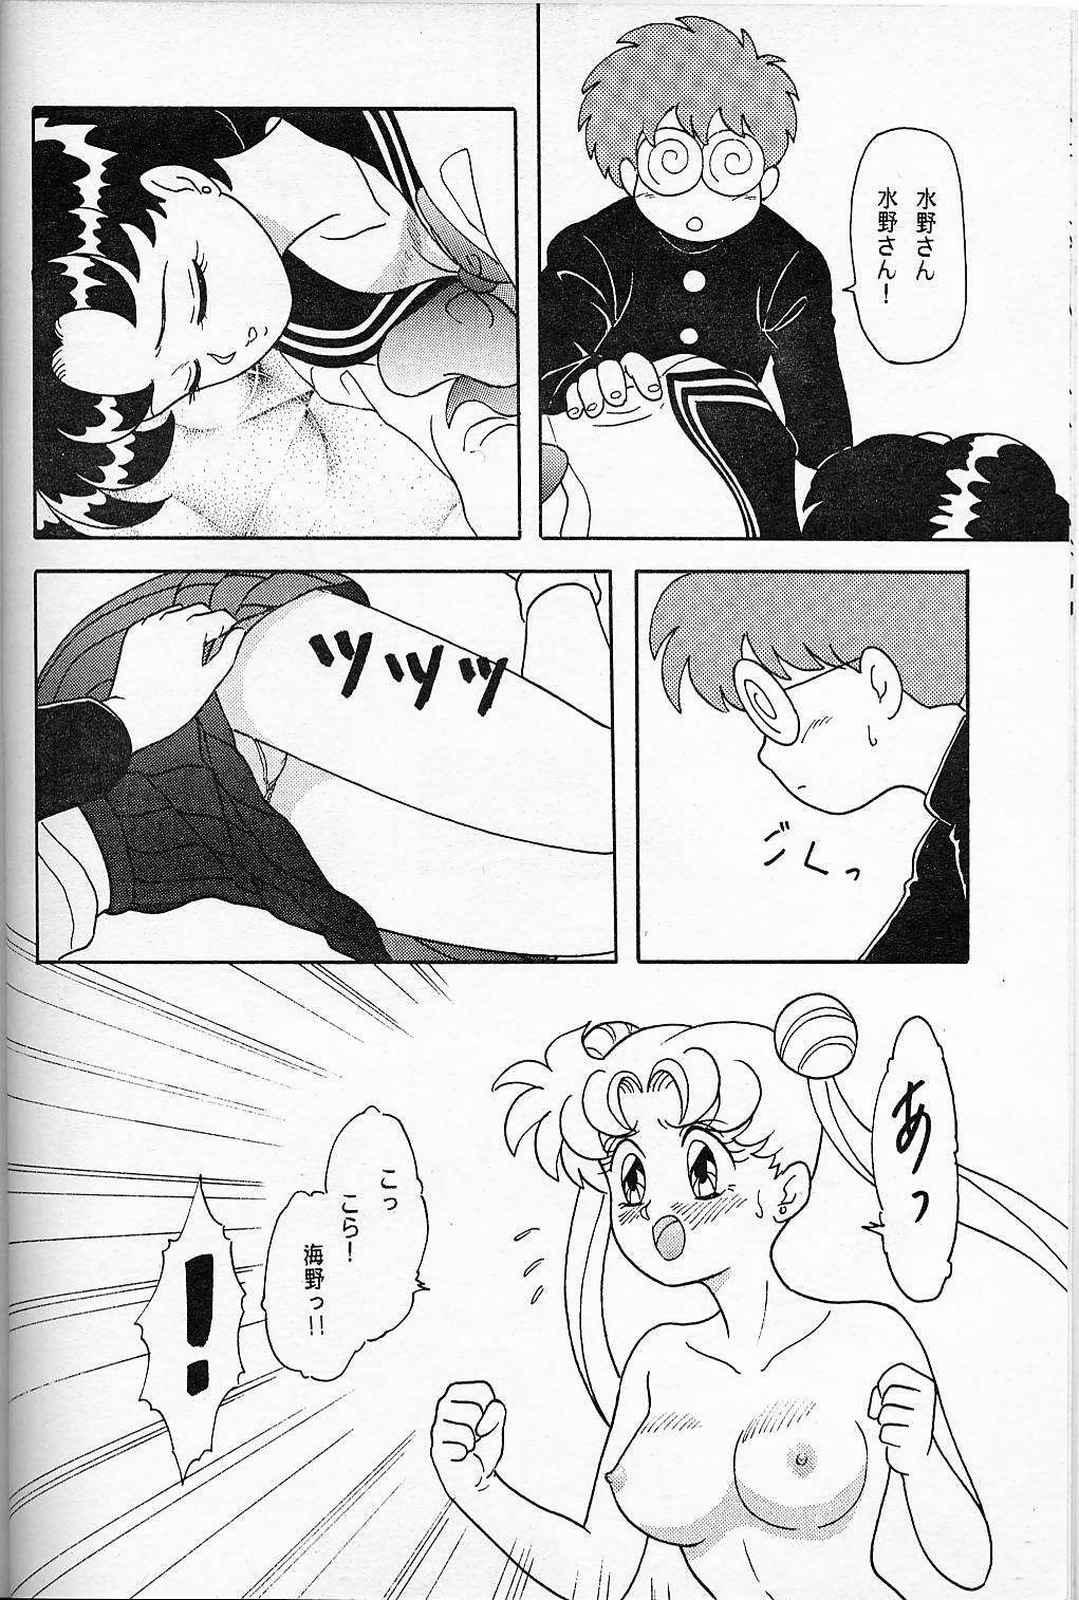 Gay Party Lunch Box 6 - Usagi - Sailor moon Analfucking - Page 9